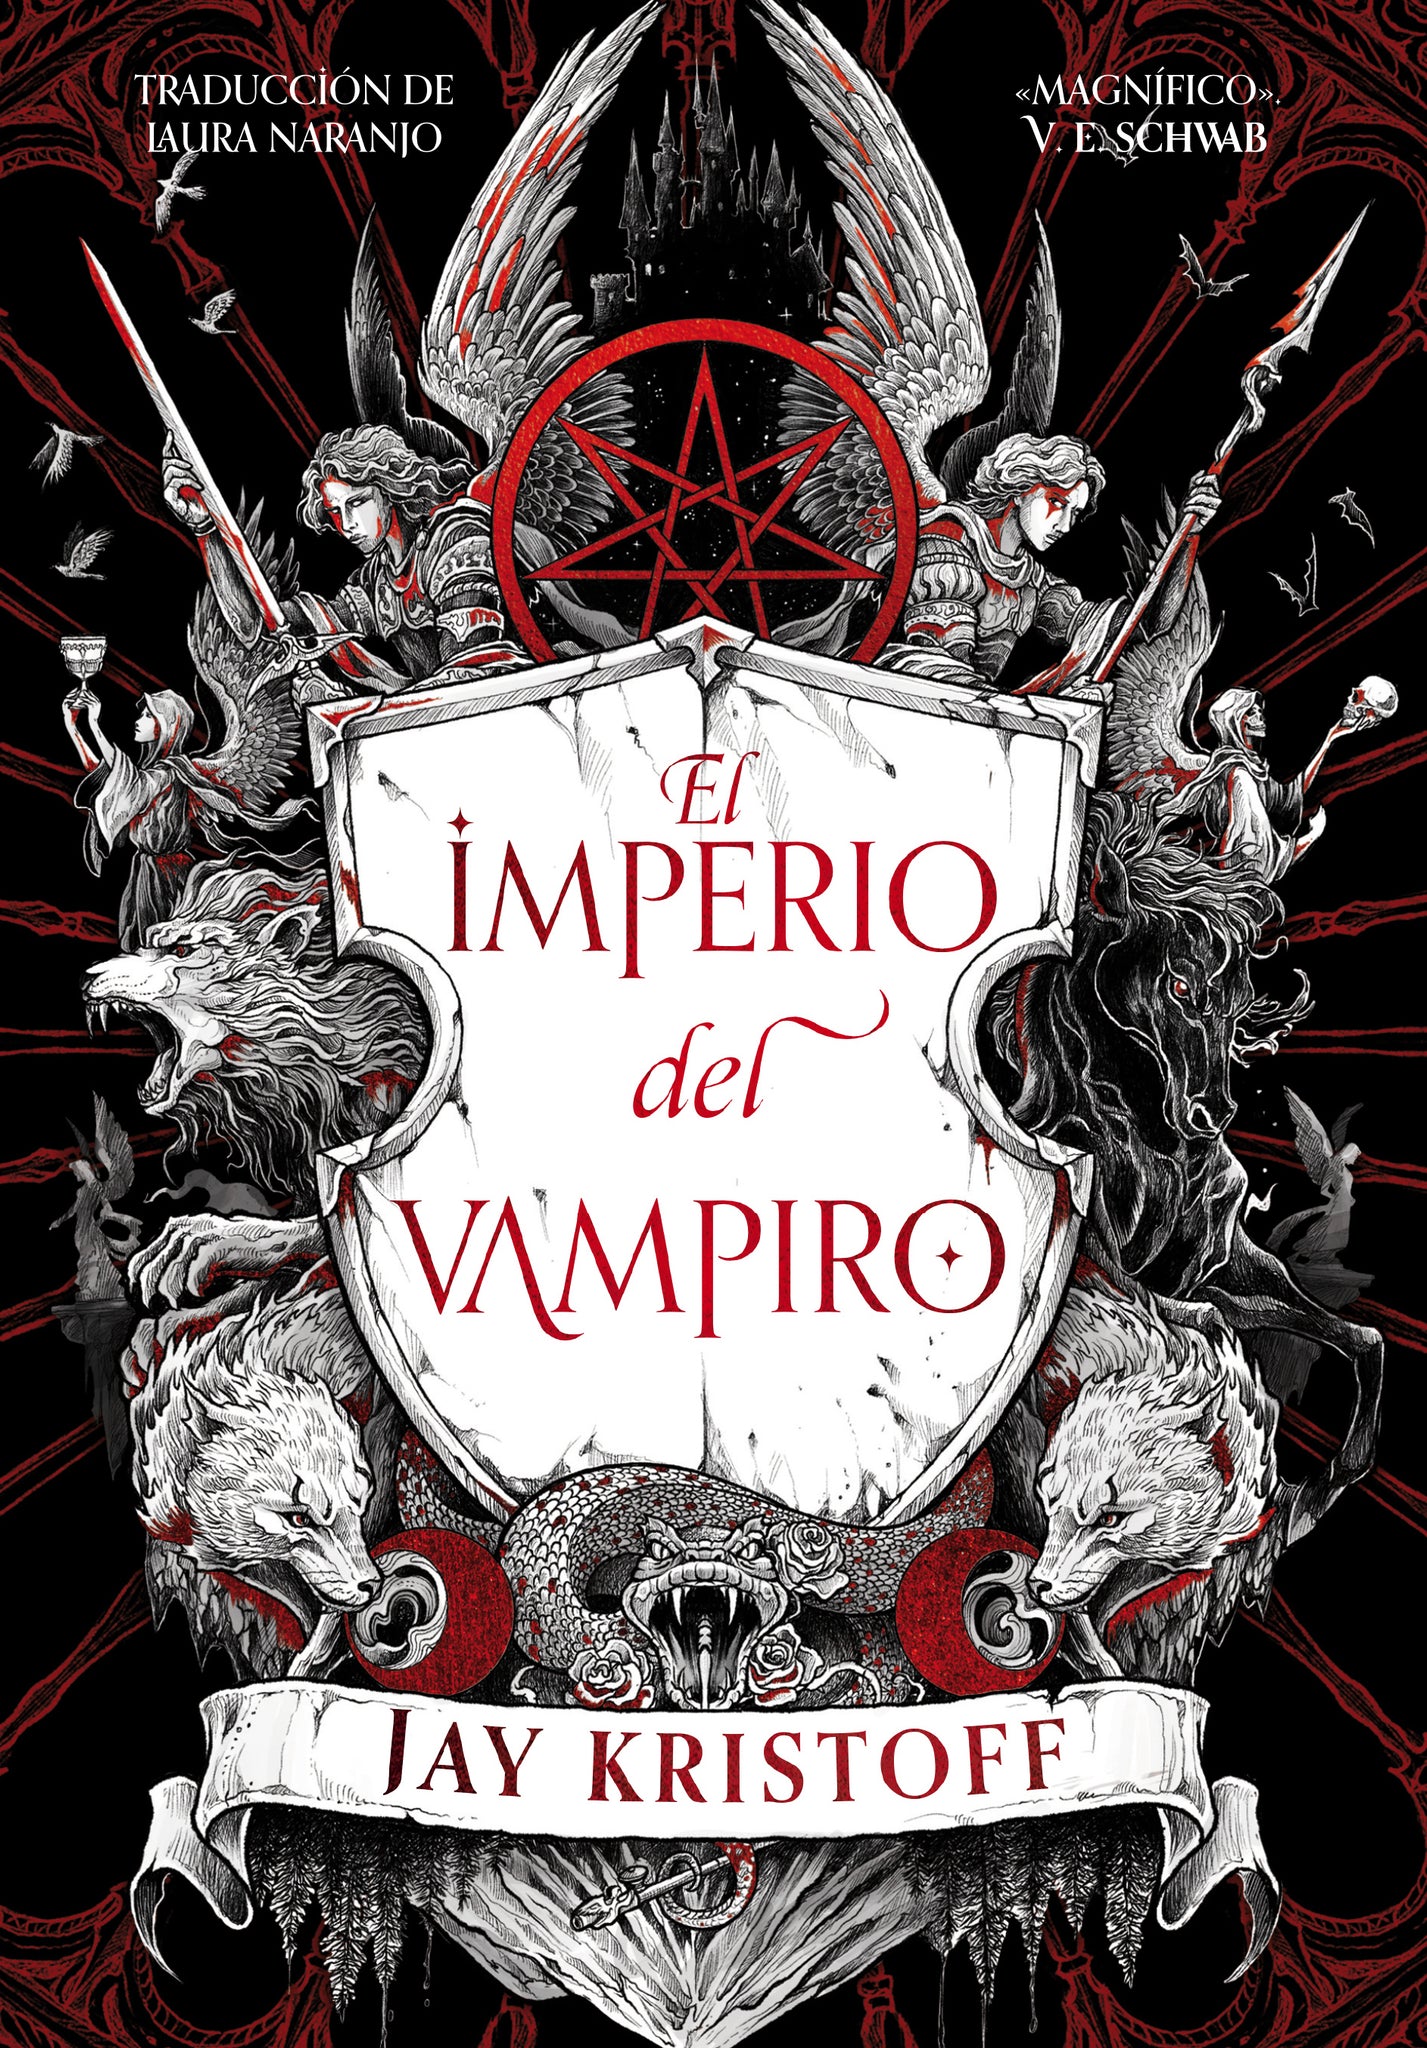 El imperio del vampiro (Jay Kristoff)